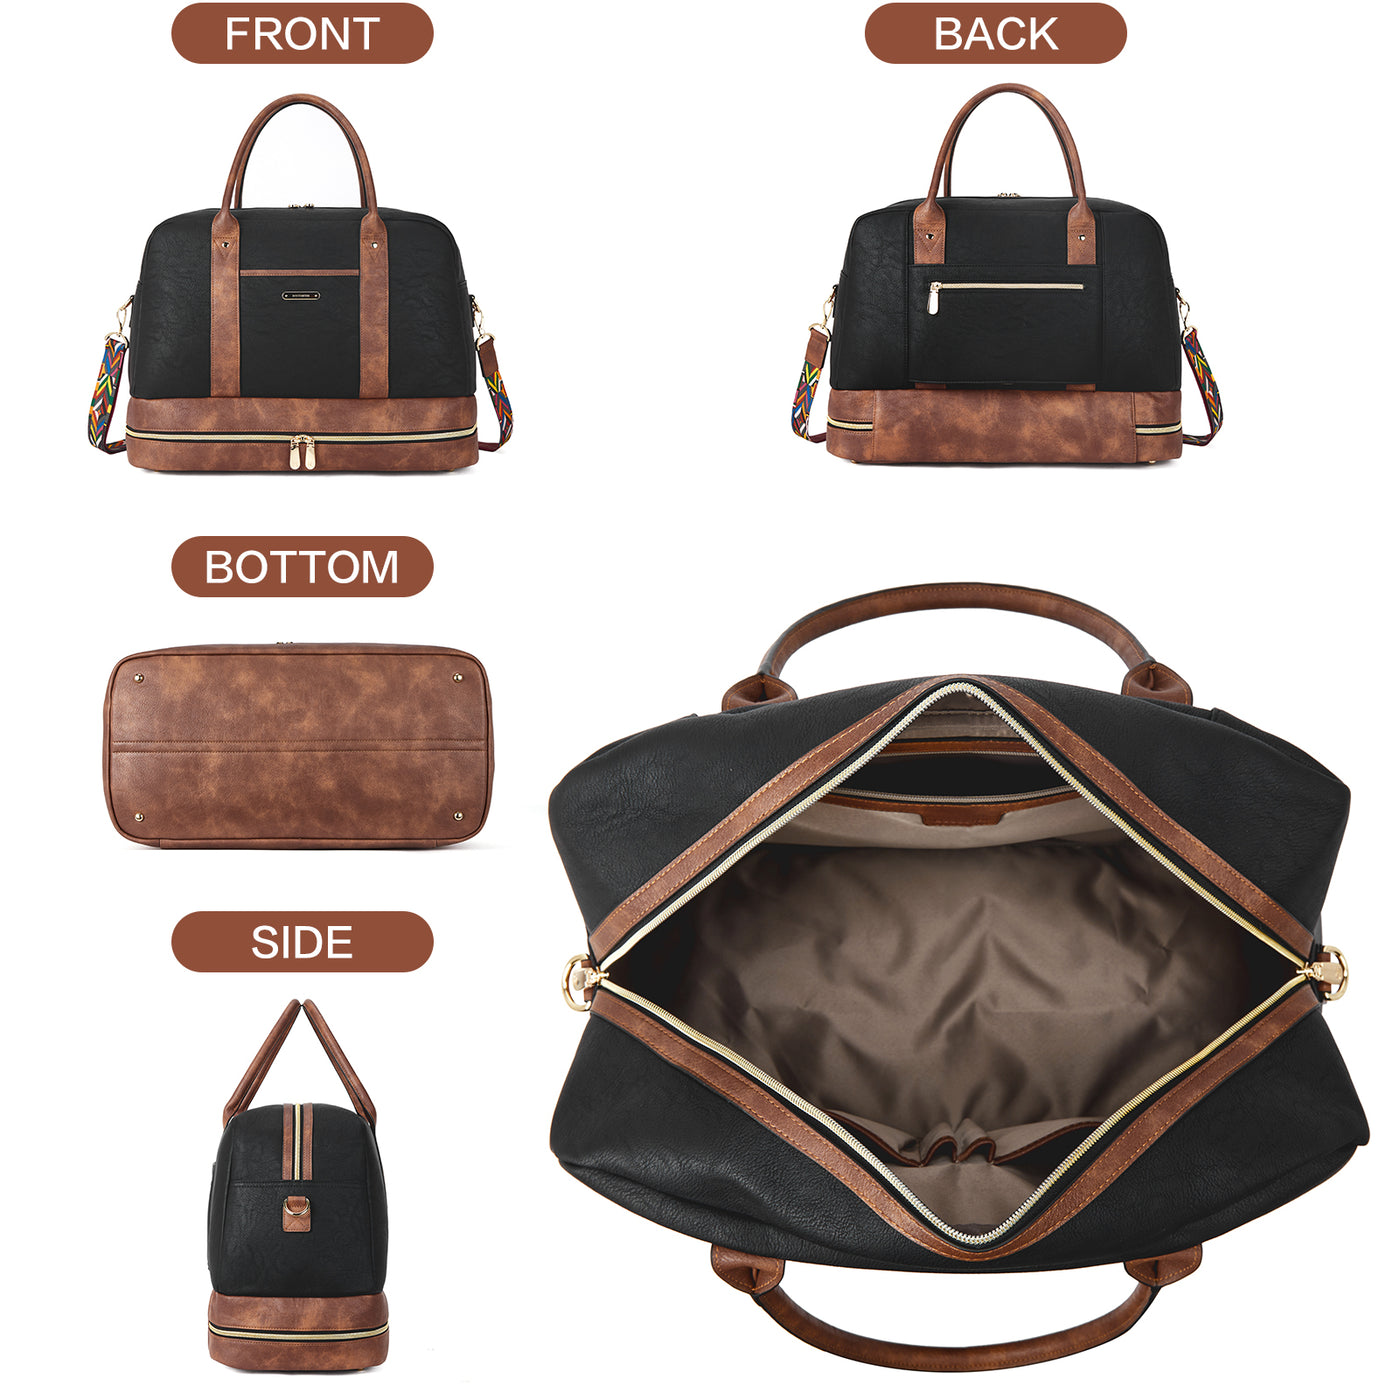 XB Travel Duffle Bag for Women & Men Vegan Leather Overnight